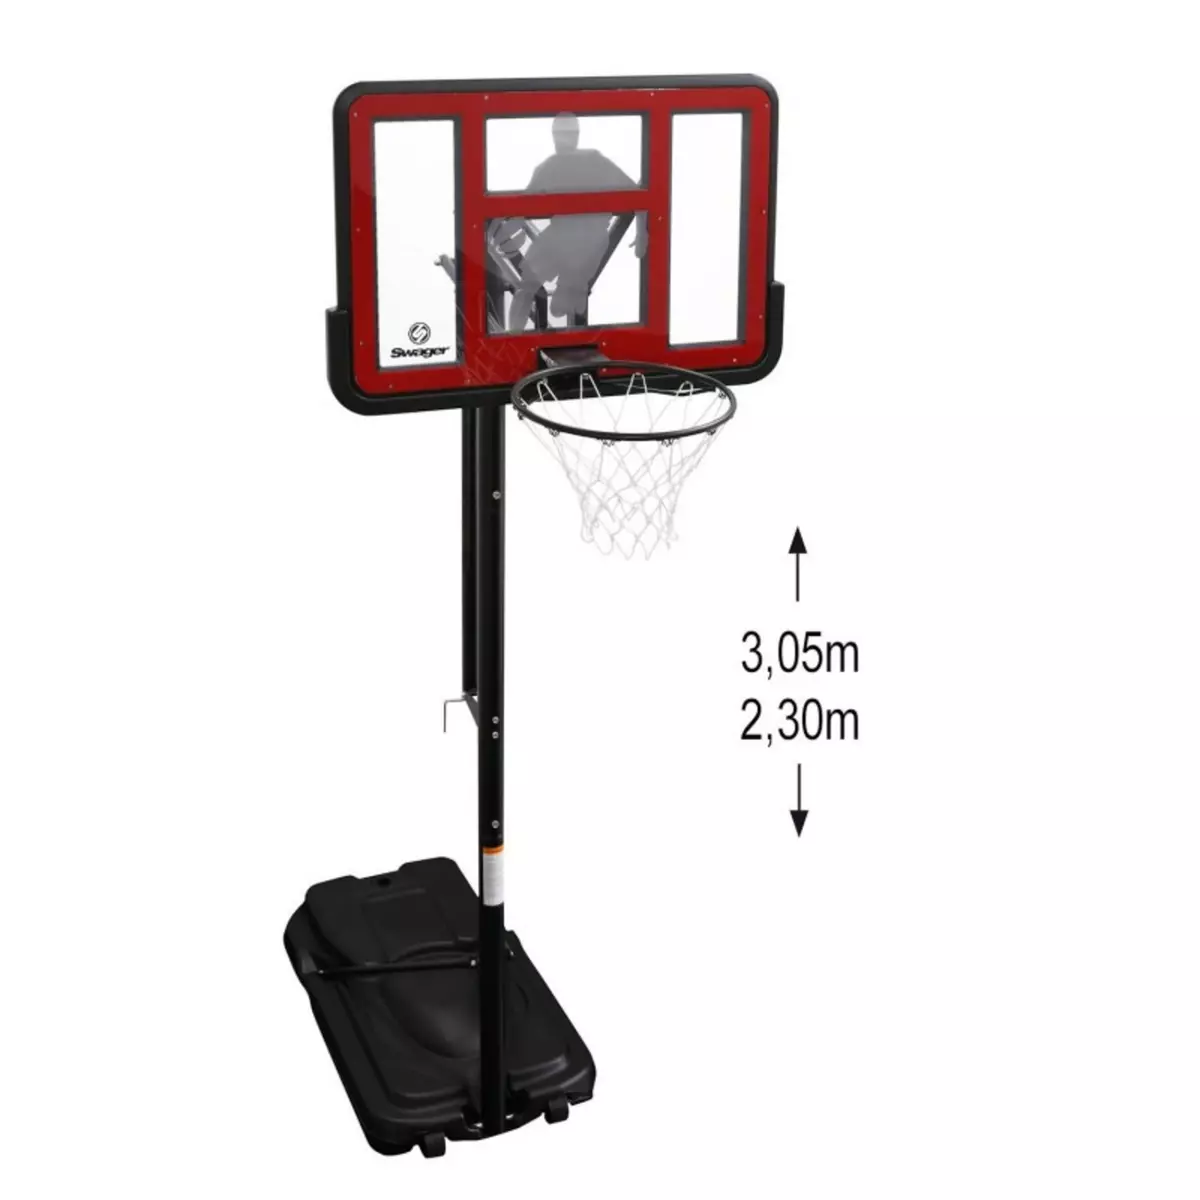 SWAGER Panier de Basketball sur Pied Mobile  King Deluxe  Hauteur Réglable de 2,30m à 3,05m